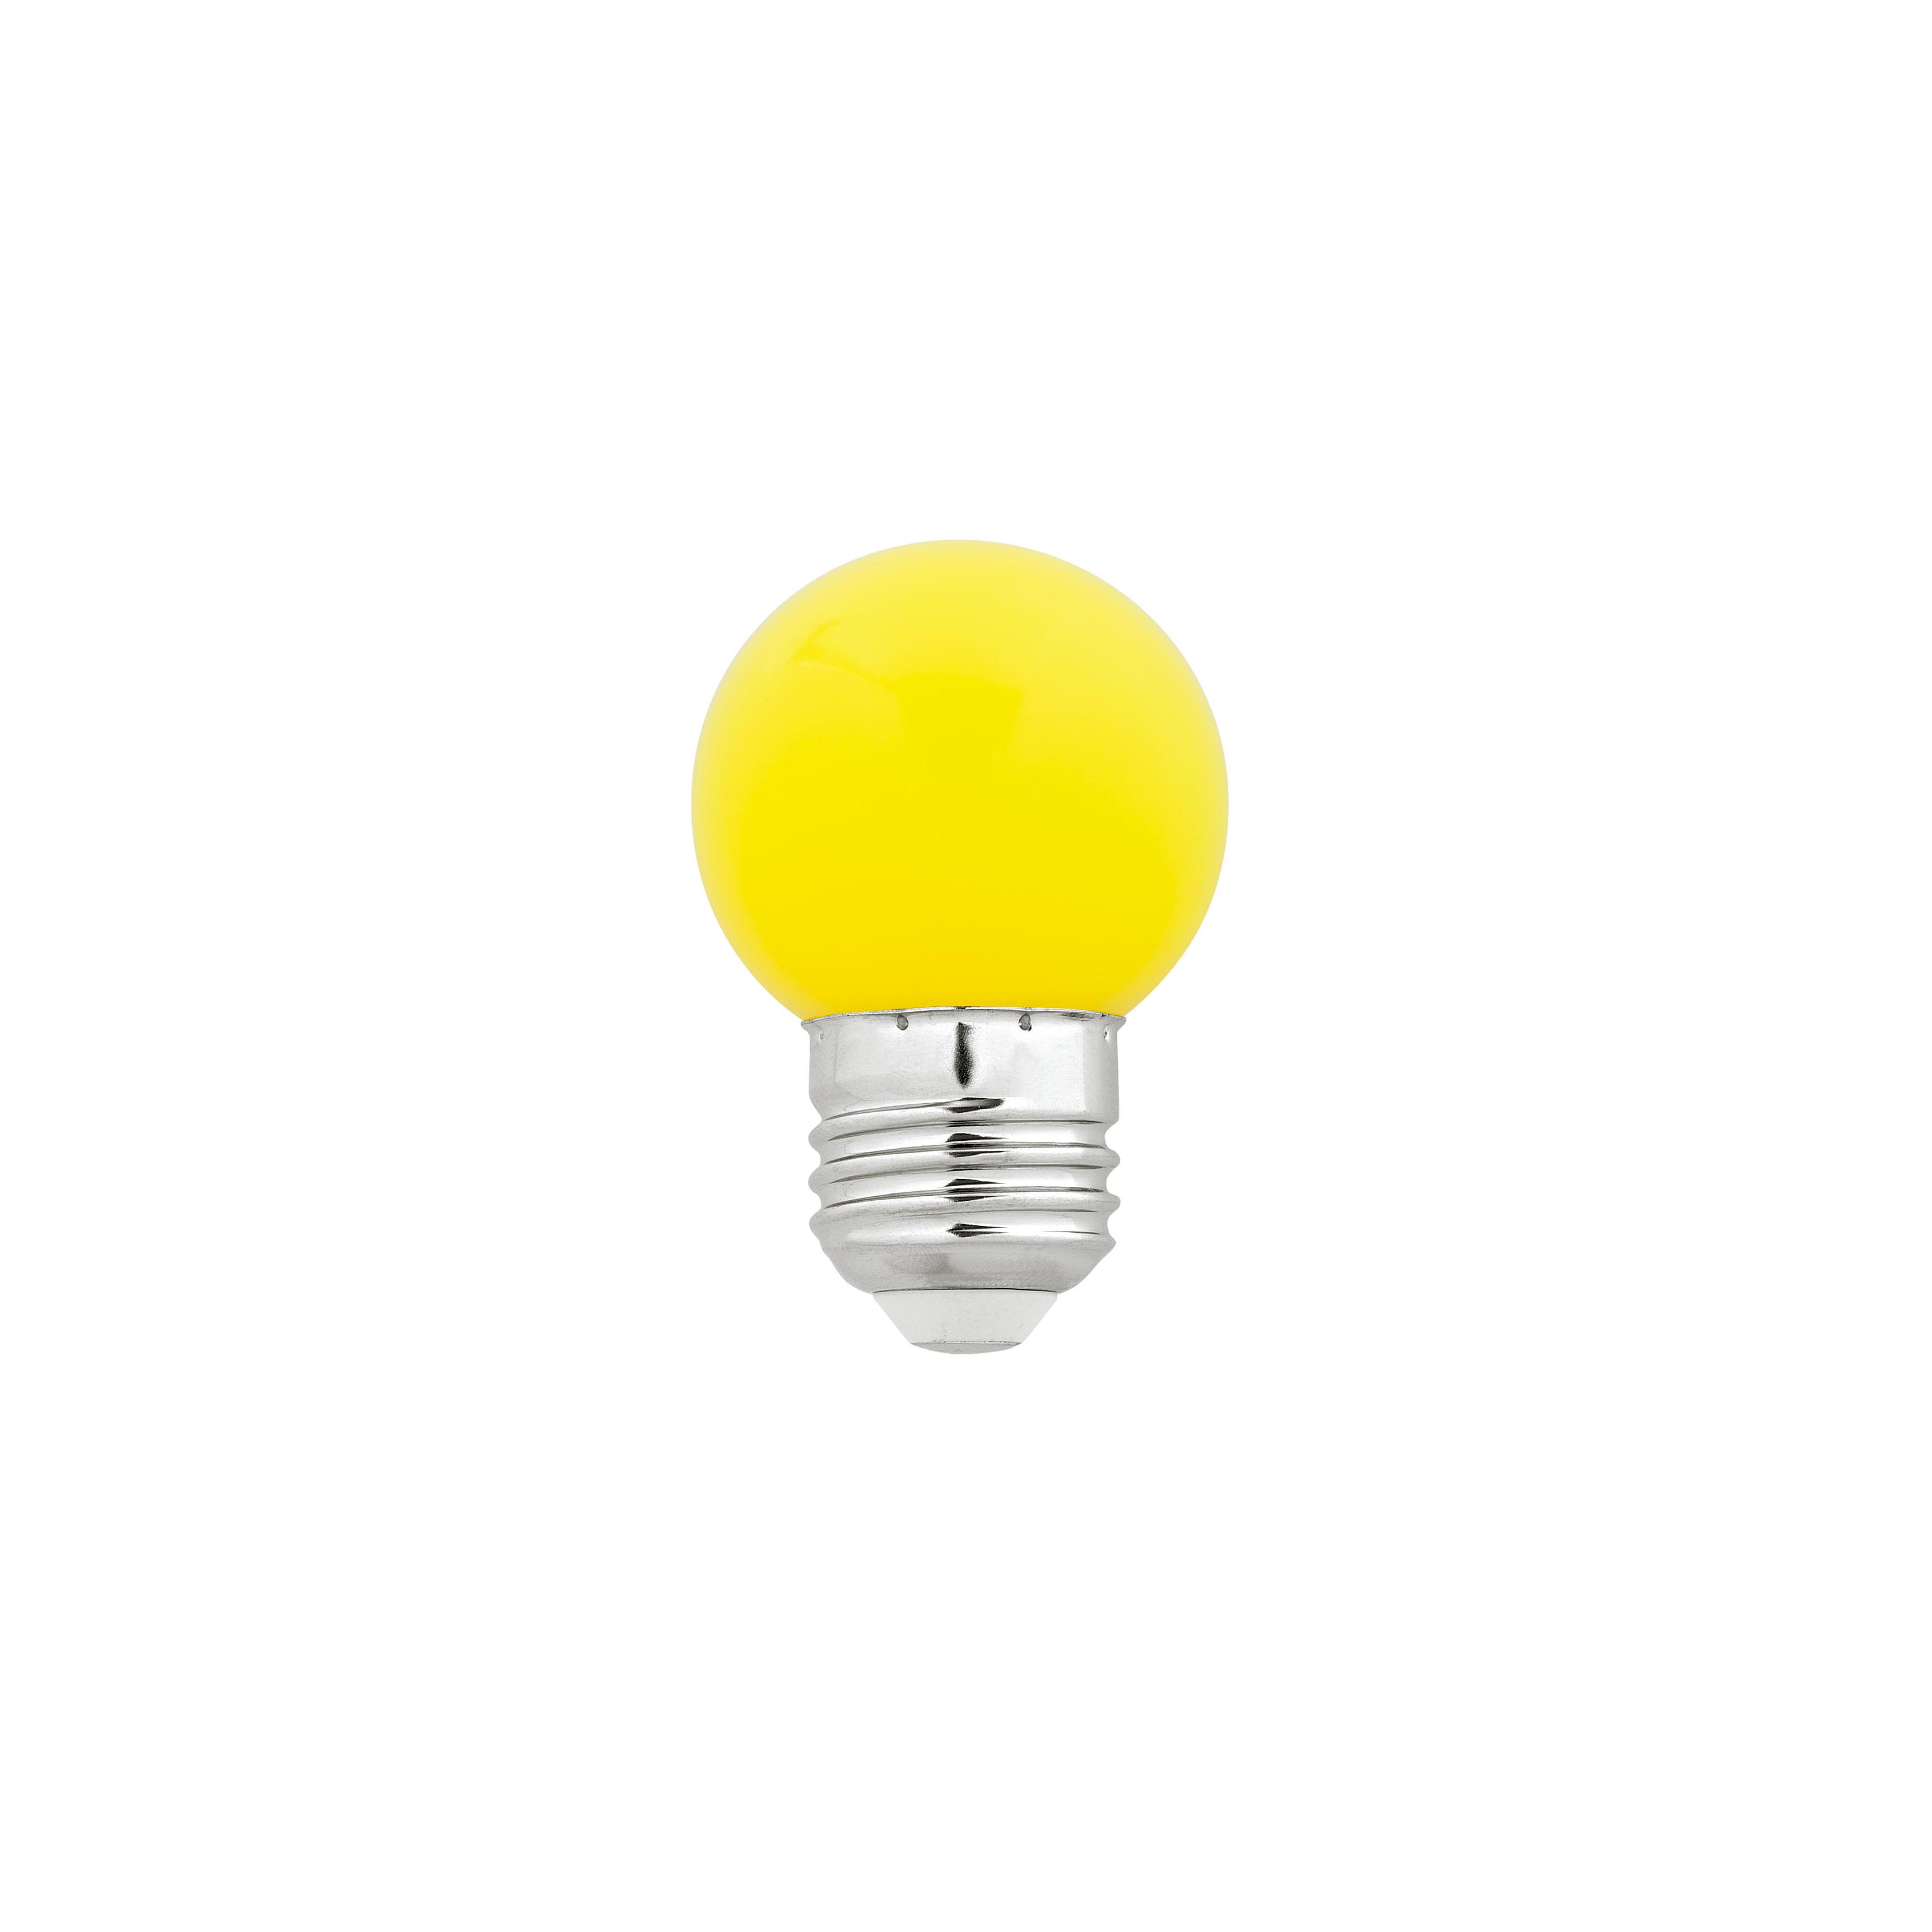 Bombilla LED esférica amarilla guirnalda 1,5W rosca E27